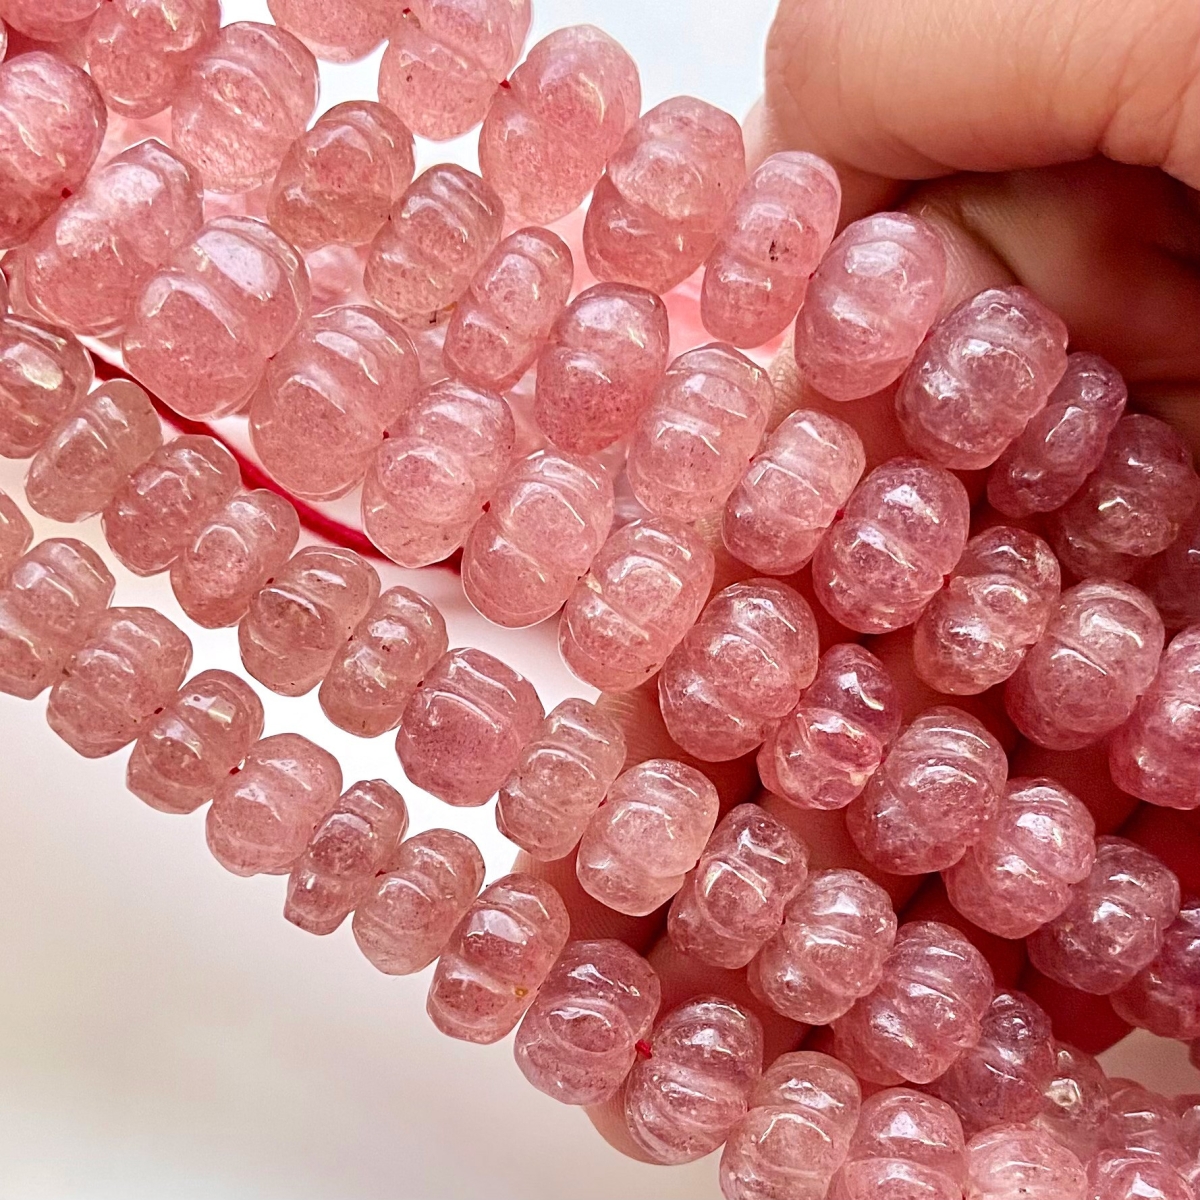 Strawberry Quartz 7-13mm Carved Melon A+ Grade Gemstone Beads Strand -  159814